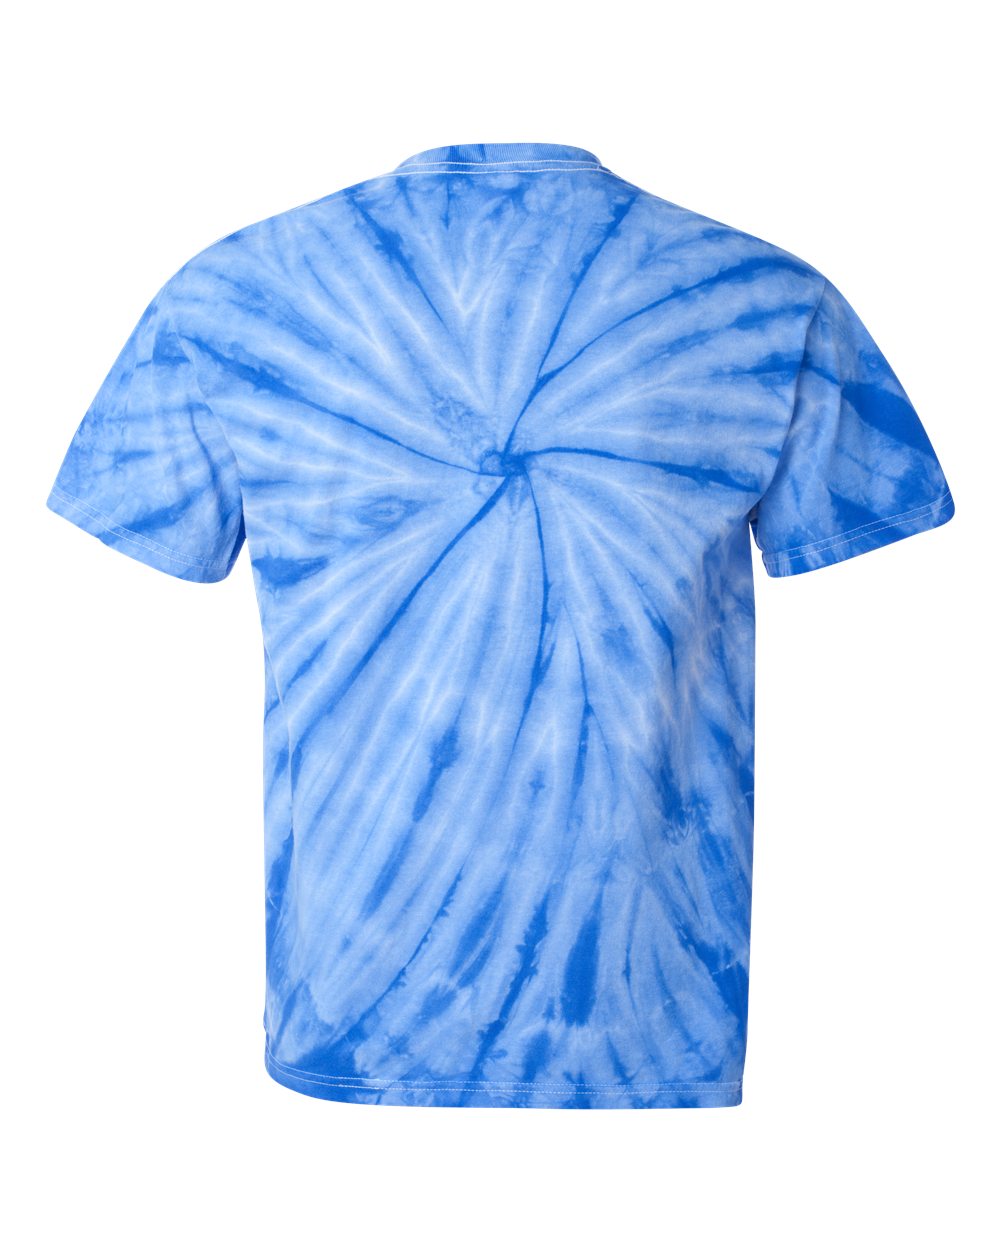 Espiral Dye - Azul